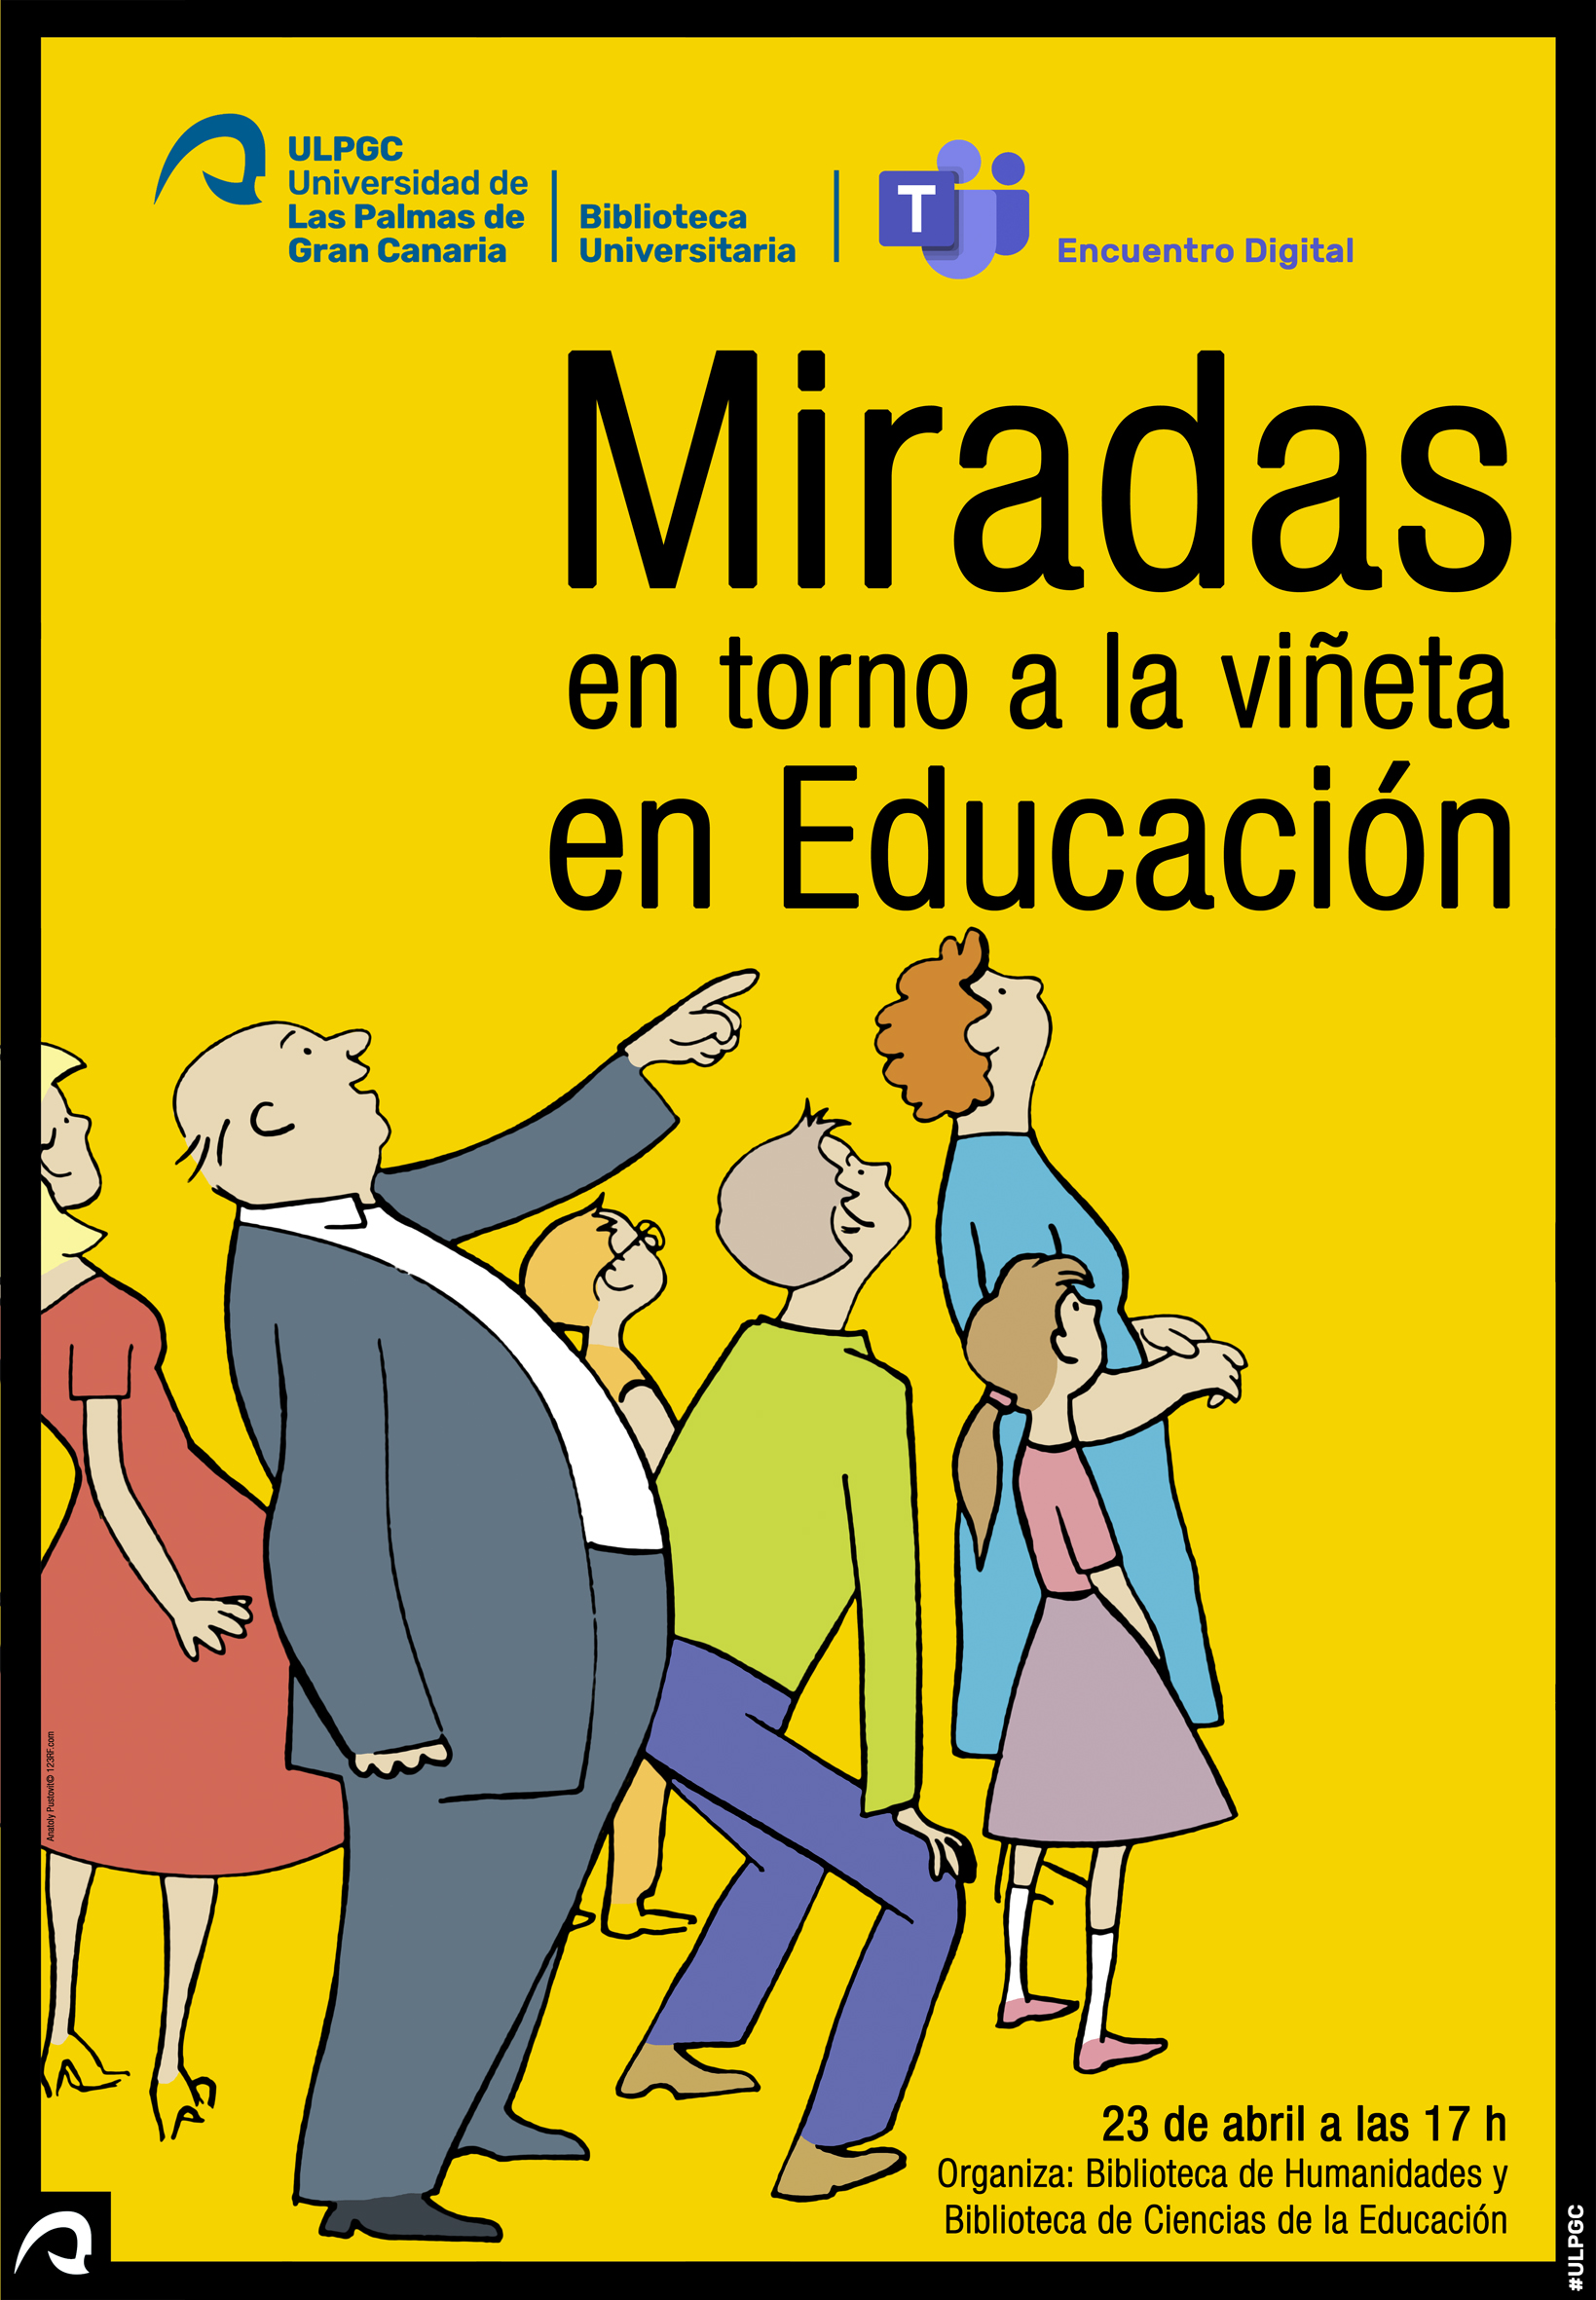 Cartel del encuentro digital "Miradas en torno a la viñeta en Educación"